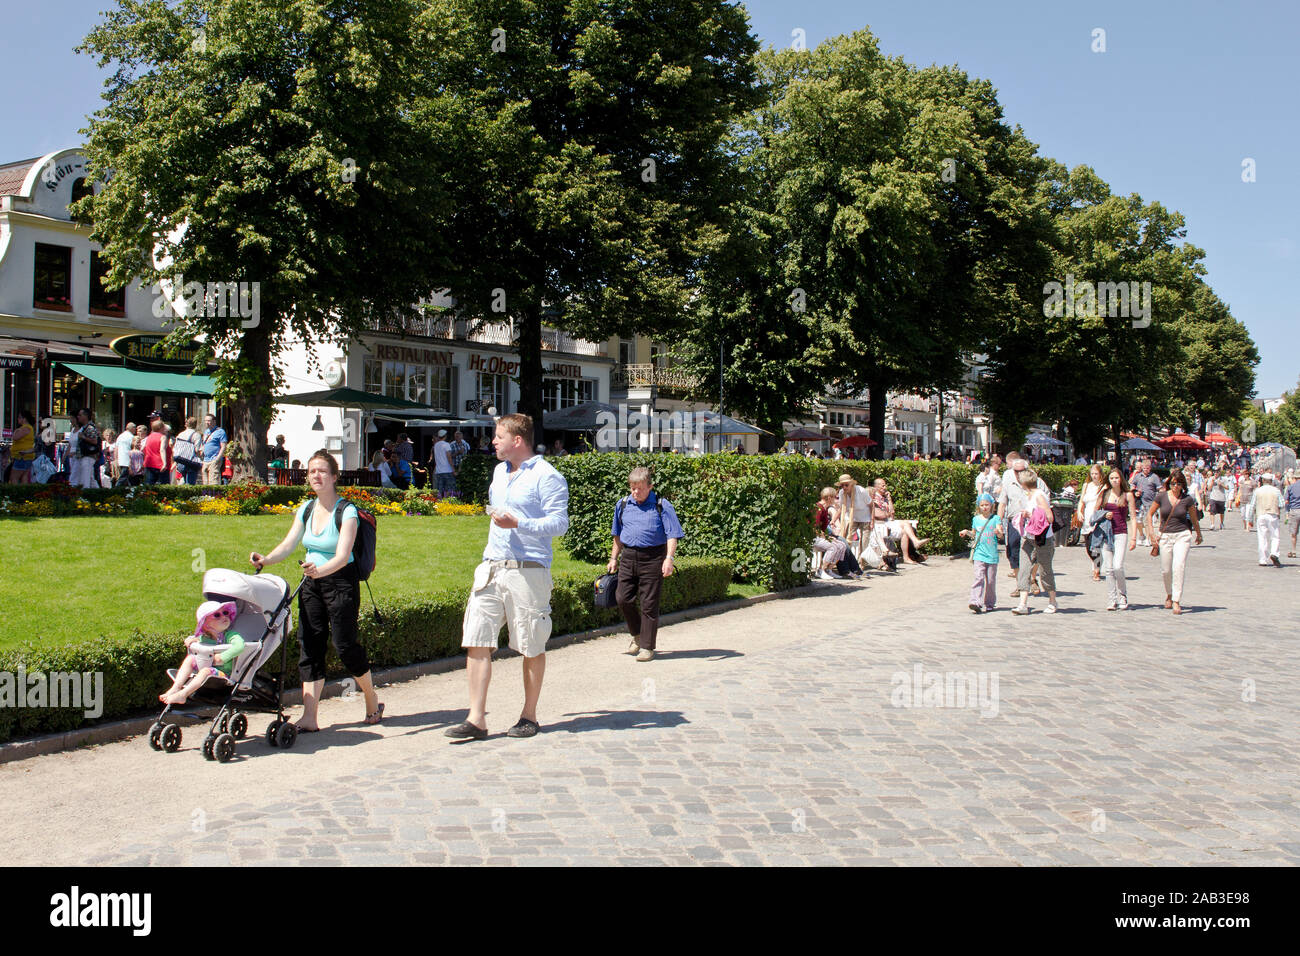 Touristen flanieren über die Promenade in Warnemünde und genießen das sommerliche Wetter |Tourists stroll along the boardwalk in Warnemünde and enjoy Stock Photo